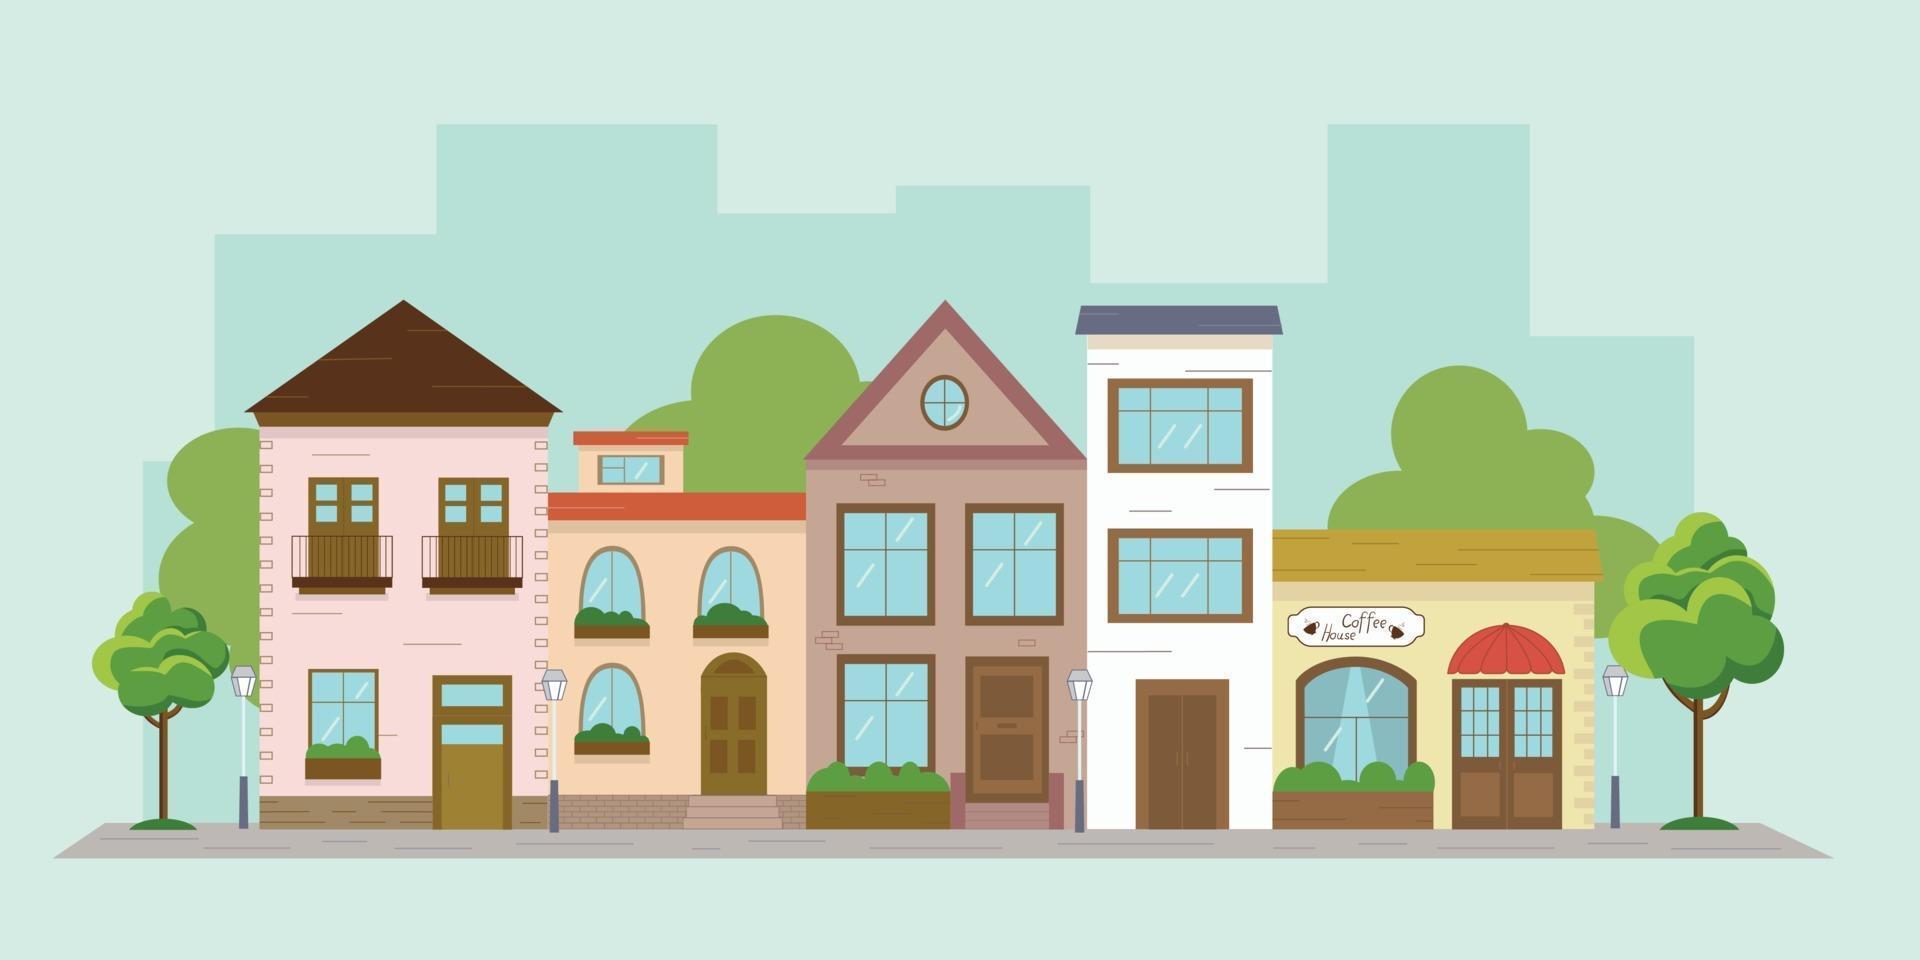 ilustração vetorial multicolorida colorida de uma rua da cidade. desenho de casas em um estilo simples. rua bonita europeia com árvores e lanternas. vetor